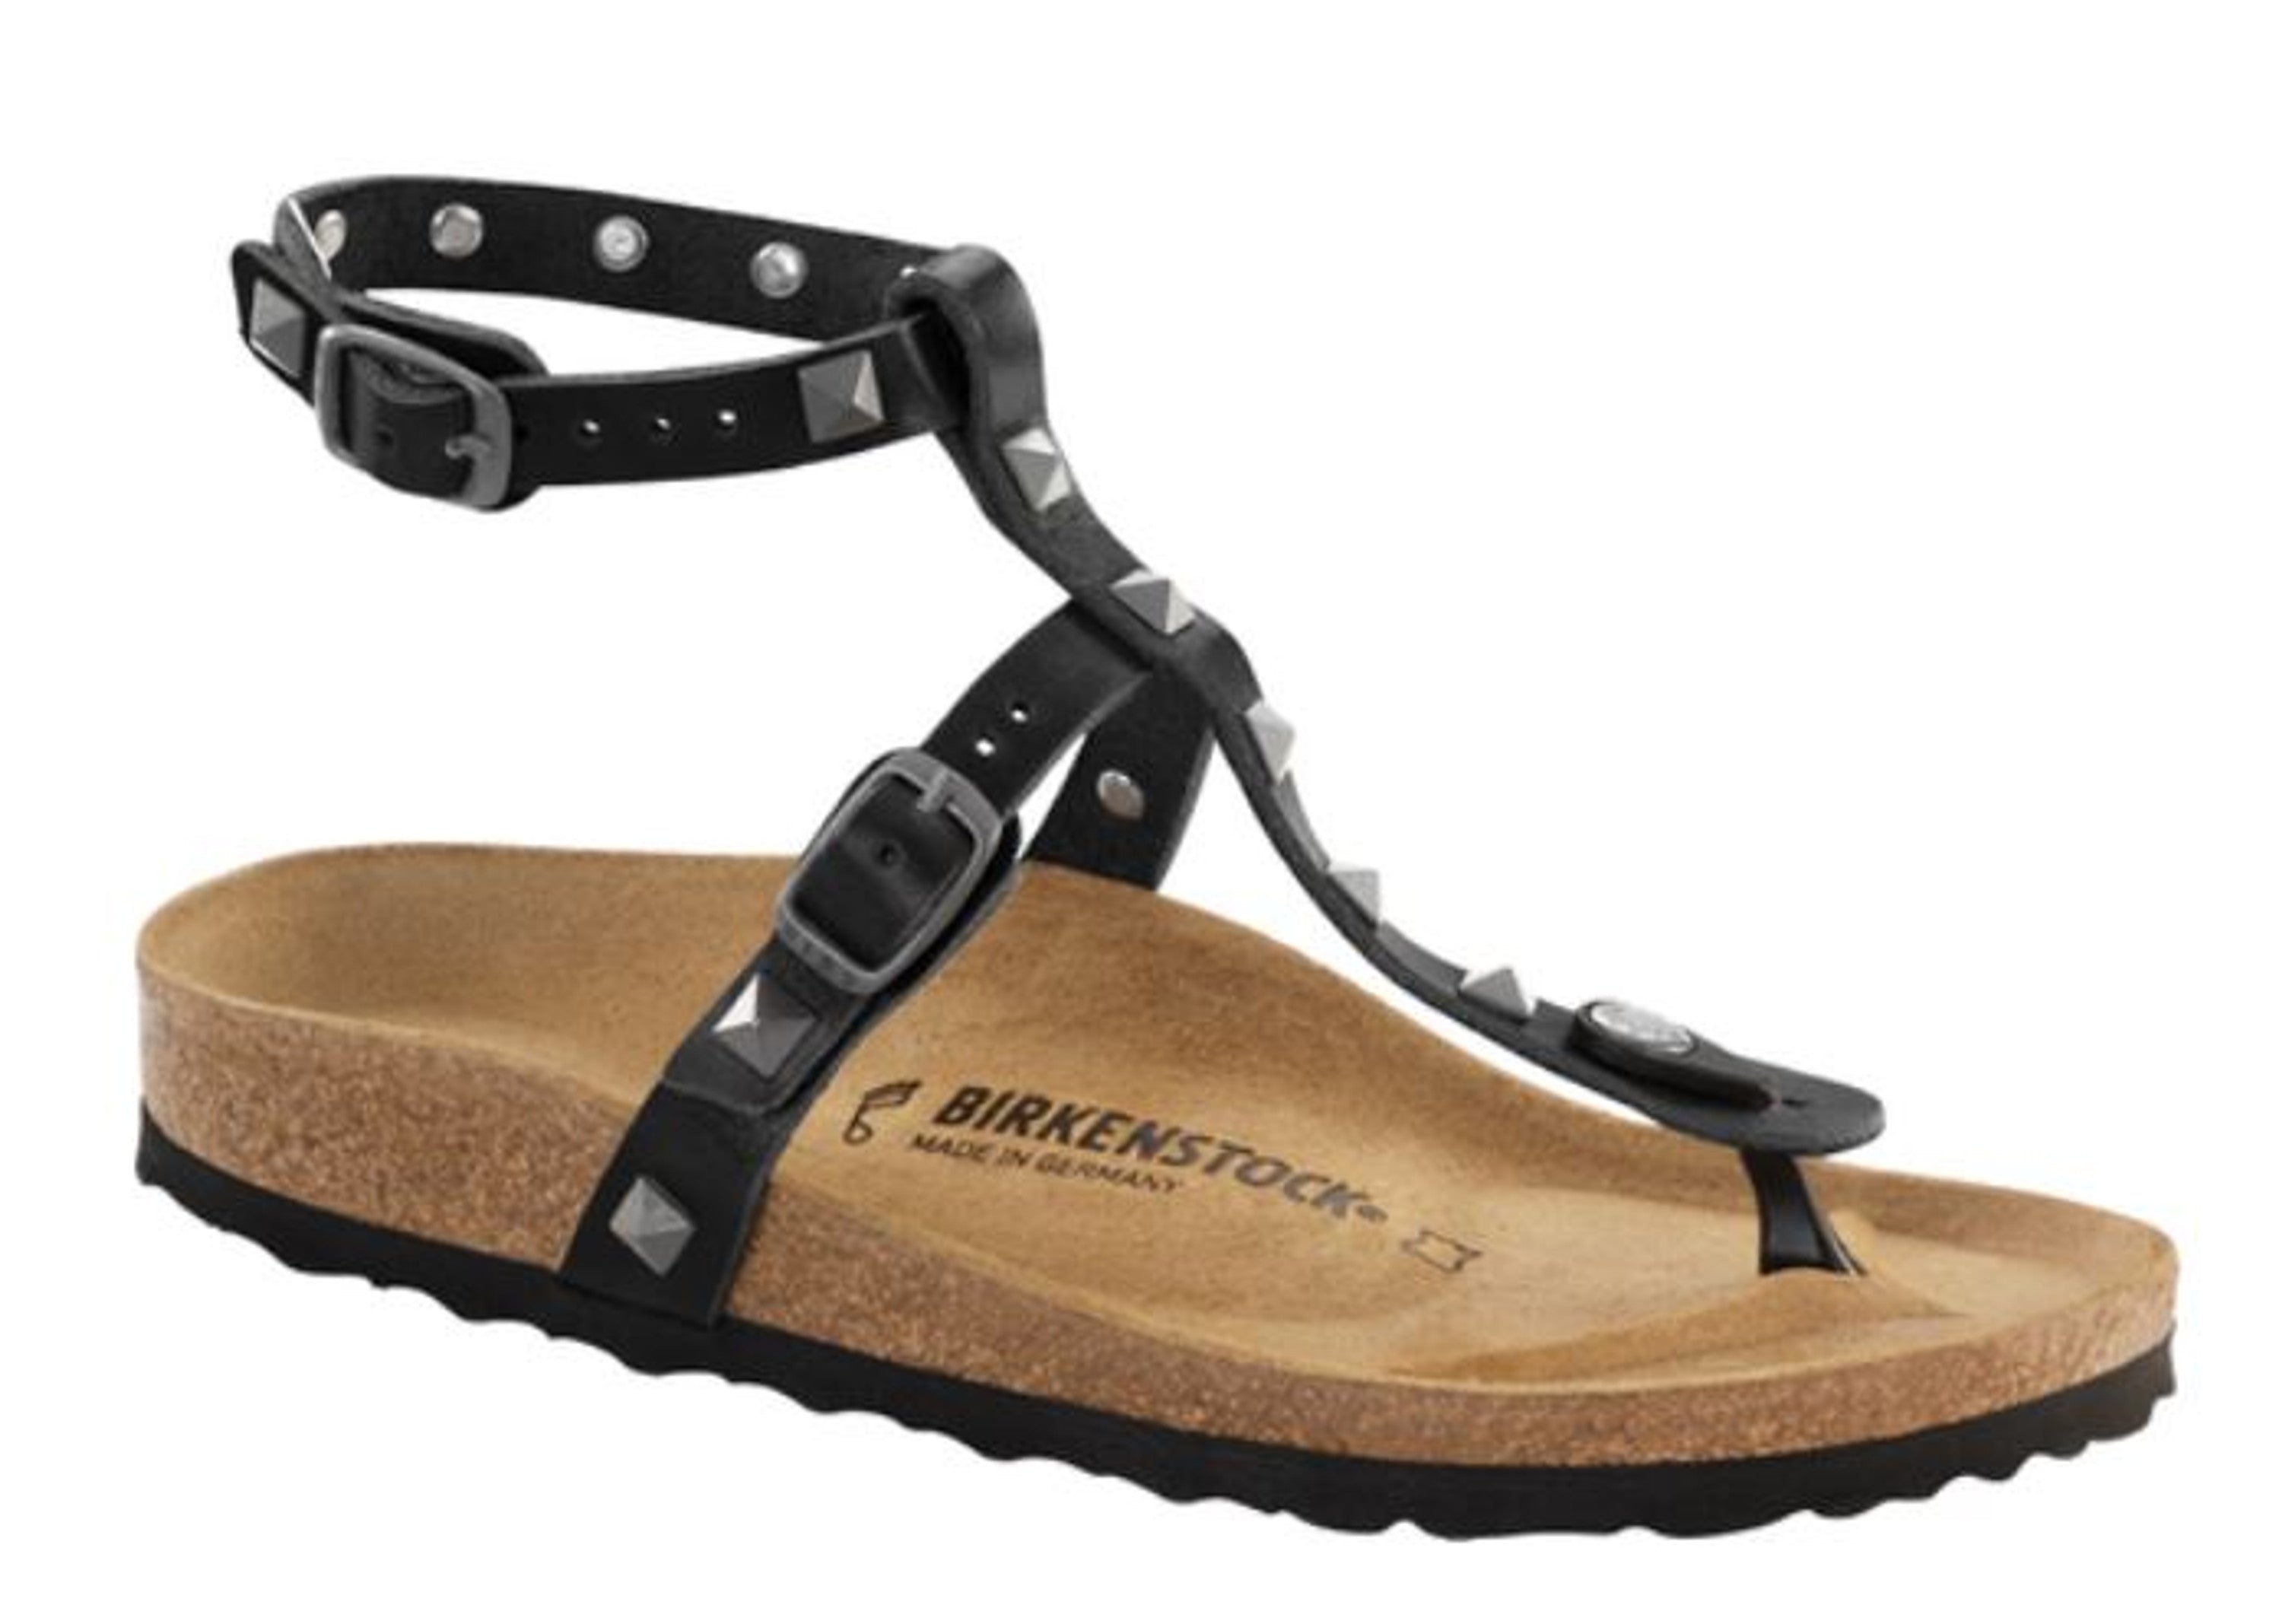 Birkenstock sandals Marillia Studs NL Black Regular black Natural leather - Bartel-Shop